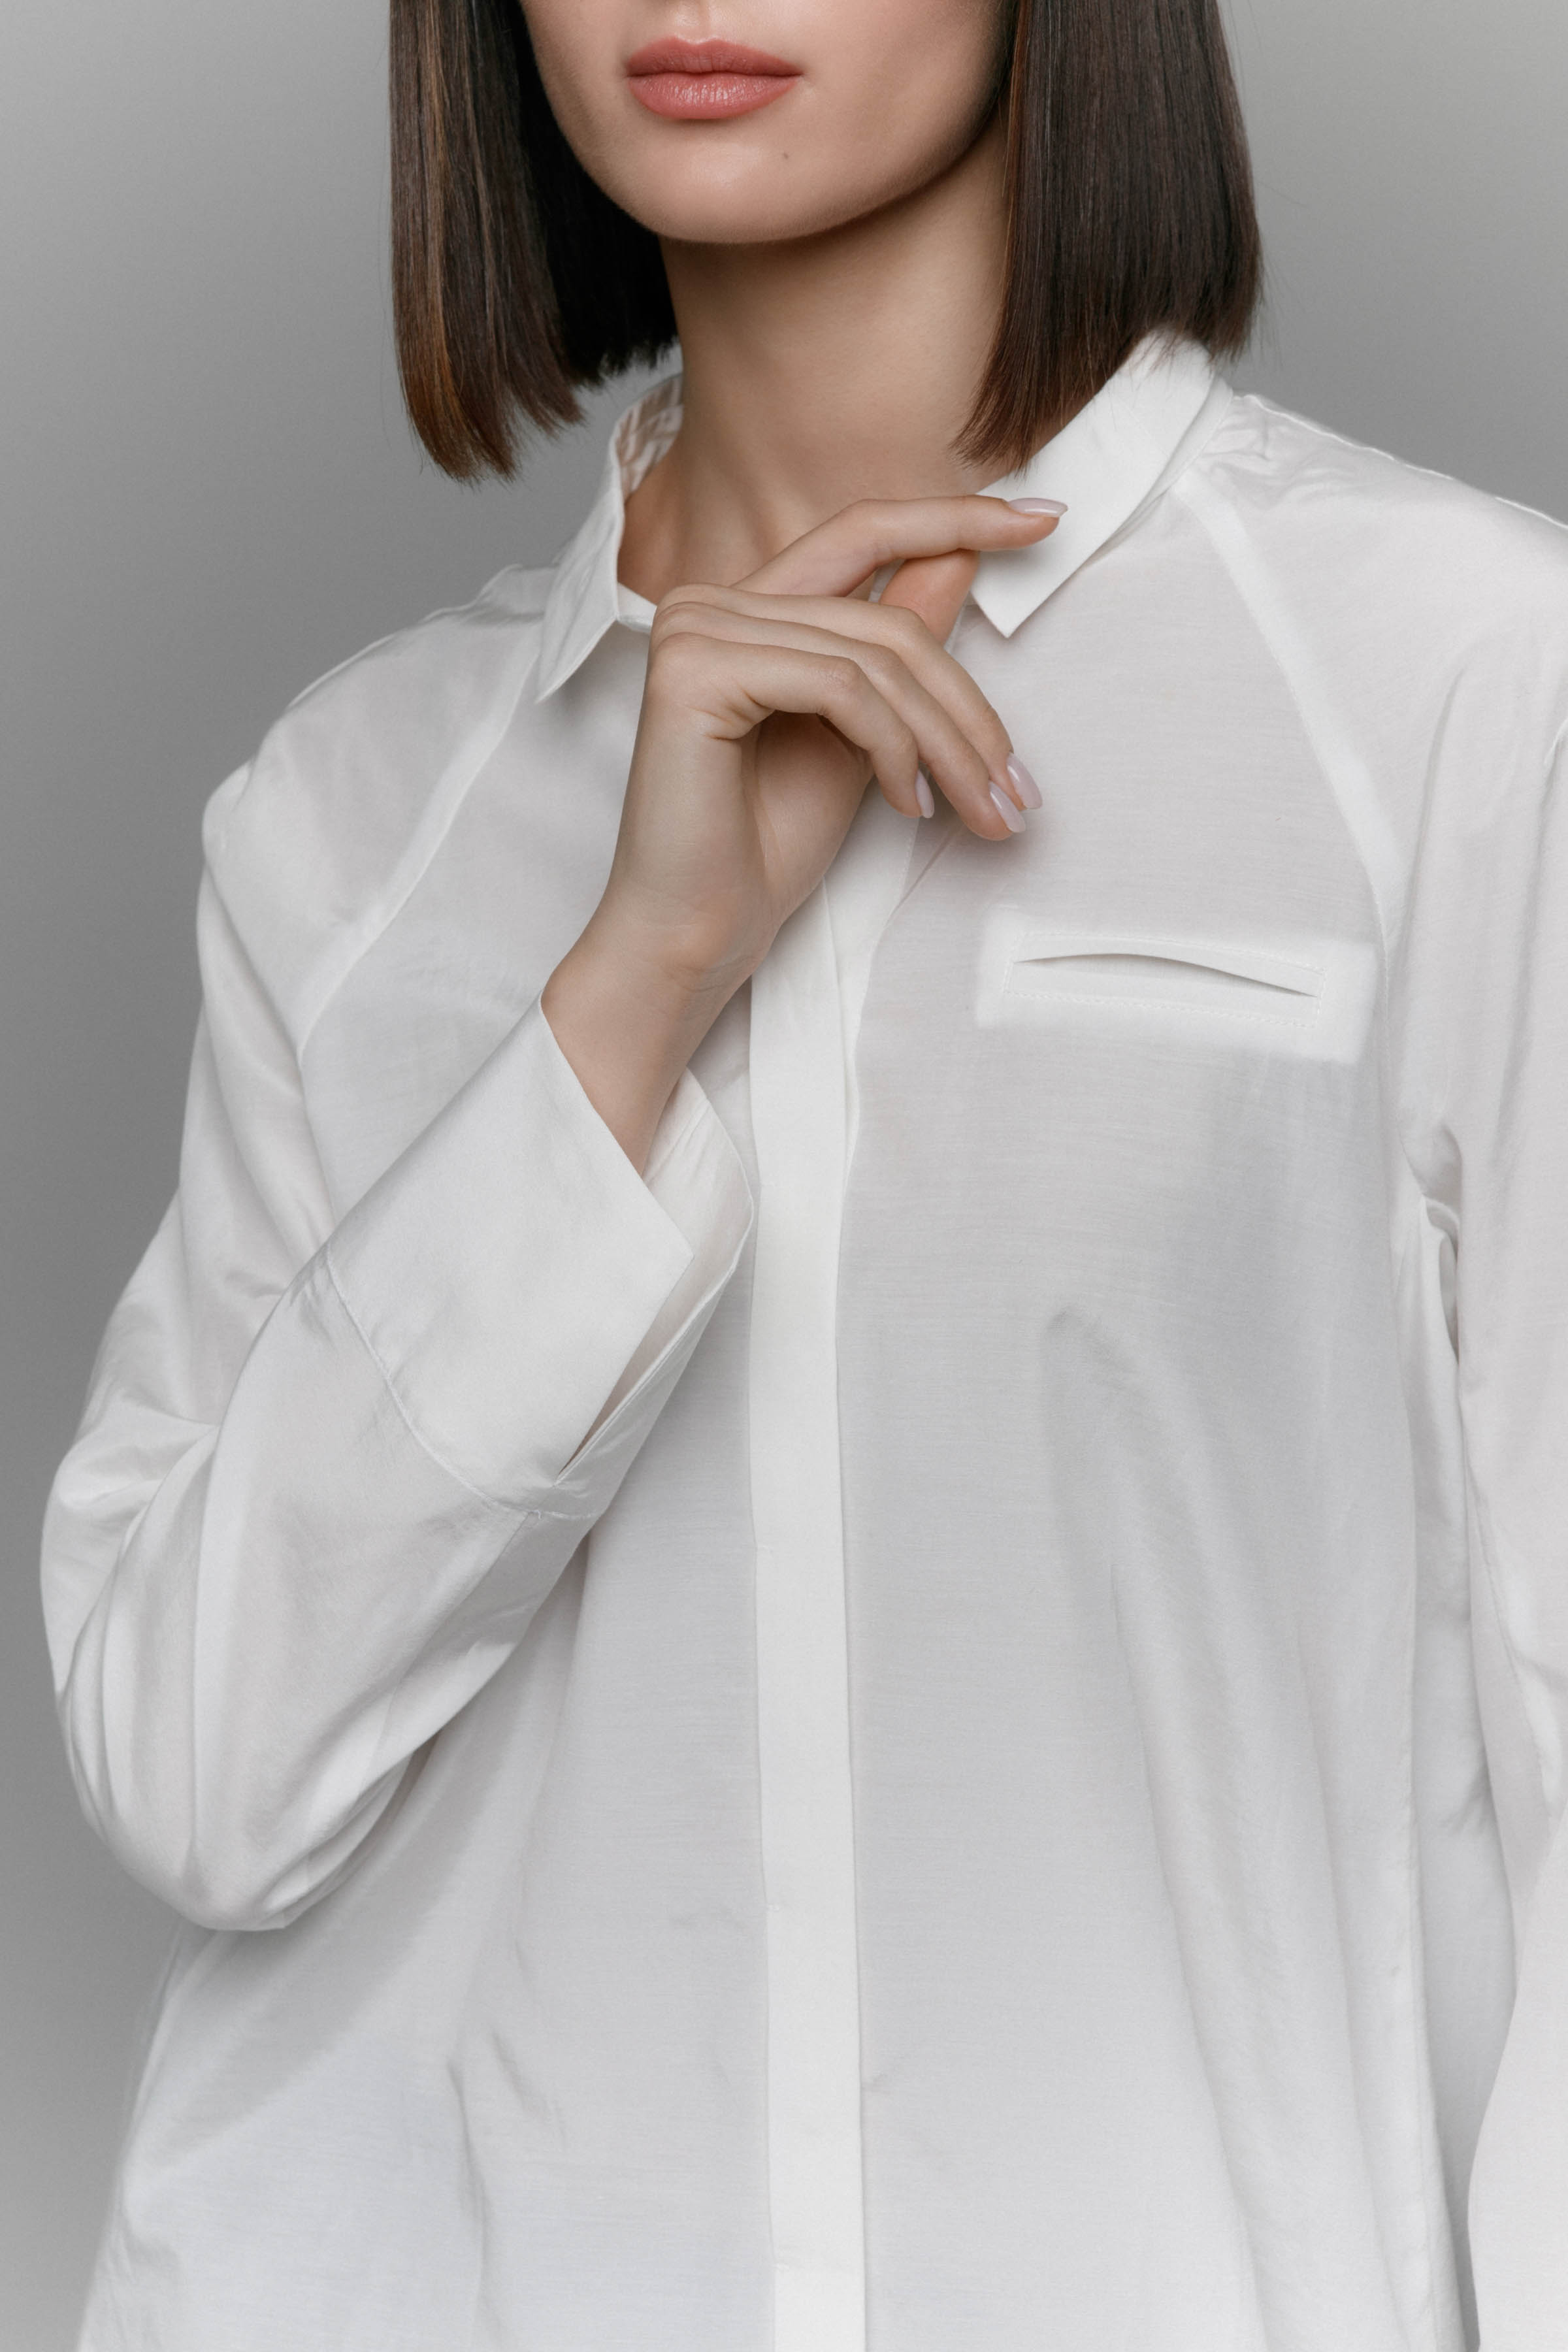 Блуза белая сорочка 03 Кварц (quartz) от Lesel (Лесель)! Заказывайте по ✆ 8 (800) 777 02 37